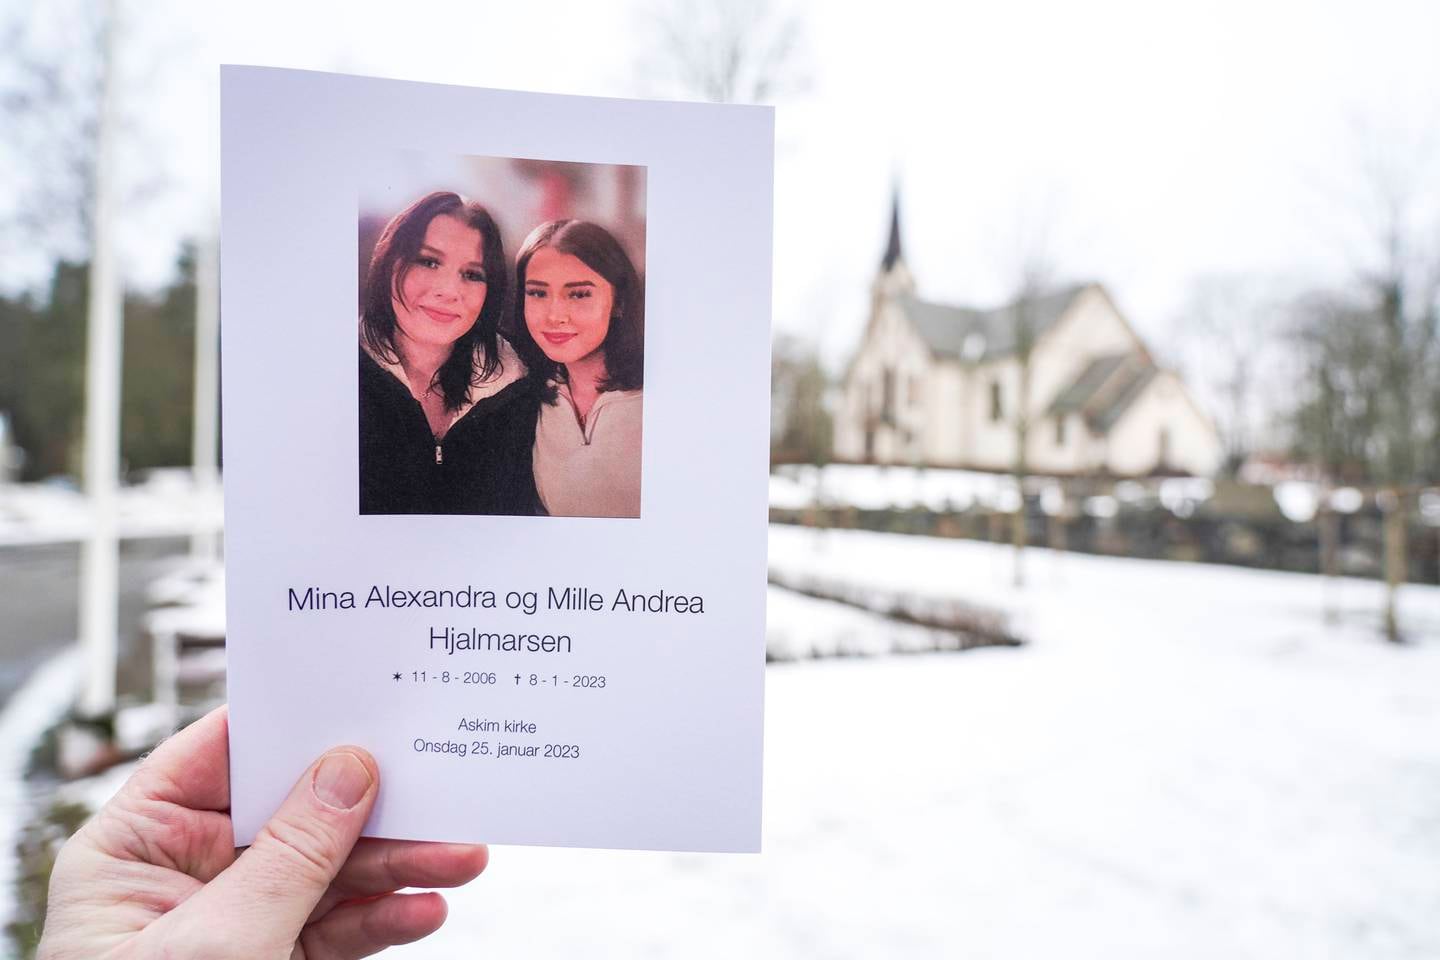 Tvillingene Mina og Mille (16) ble funnet døde i en leilighet i Spydeberg i januar i fjor mens de var i barnevernets omsorg. De døde trolig av overdose.